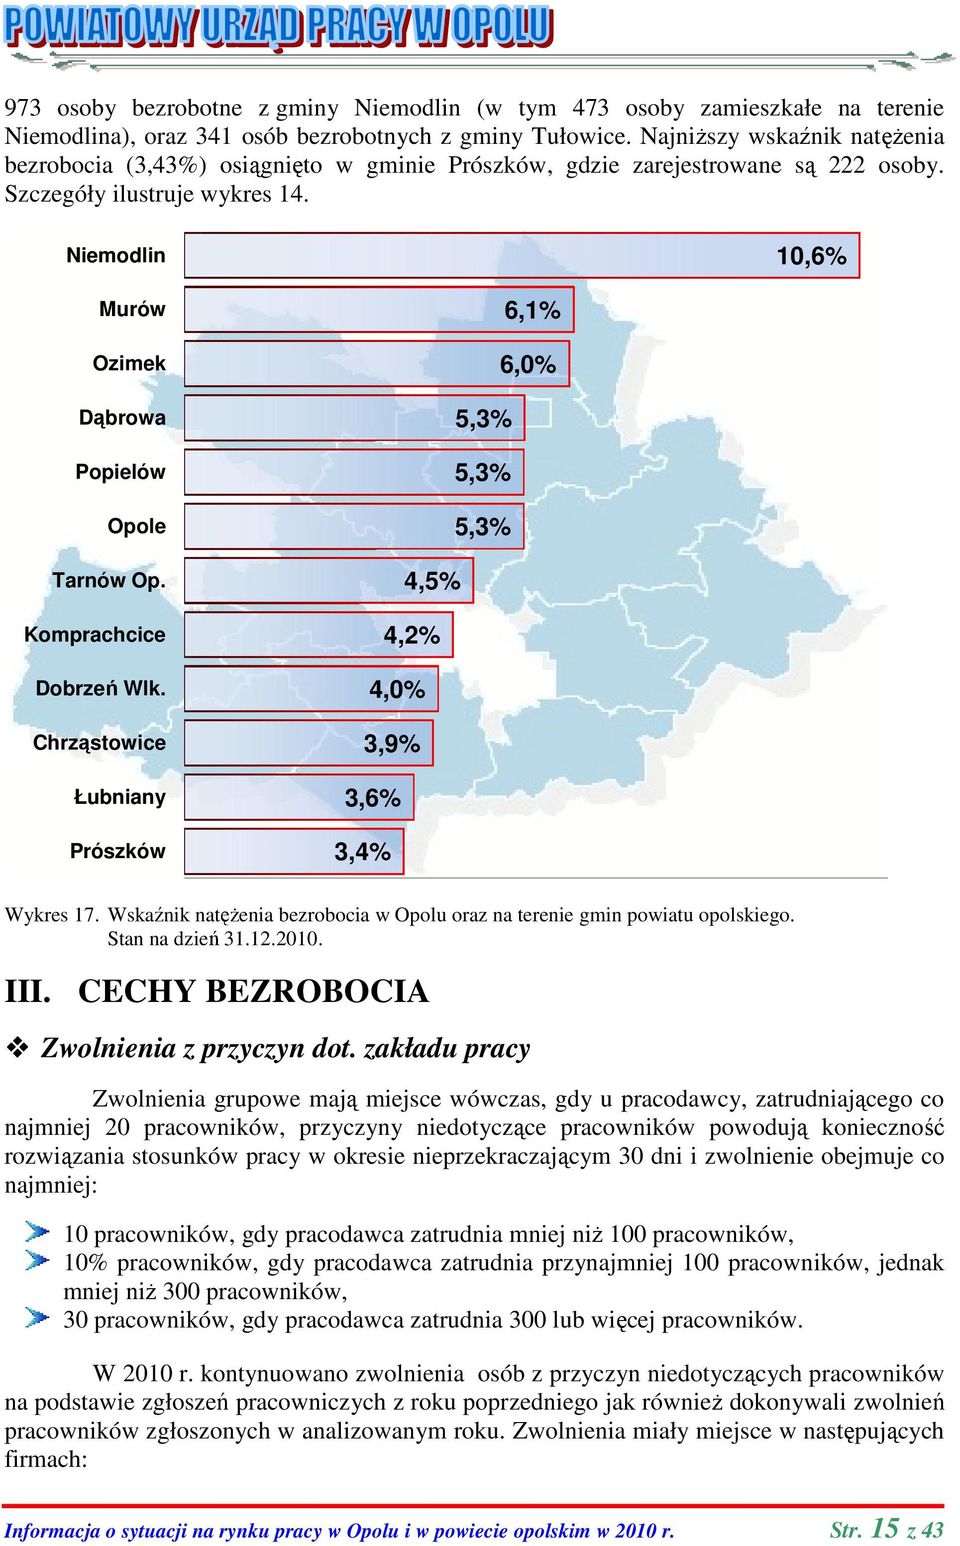 Niemodlin 10,6% Murów Ozimek Dąbrowa Popielów Opole Tarnów Op. Komprachcice Dobrzeń Wlk. Chrząstowice Łubniany Prószków 6,1% 6,0% 5,3% 5,3% 5,3% 4,5% 4,2% 4,0% 3,9% 3,6% 3,4% Wykres 17.